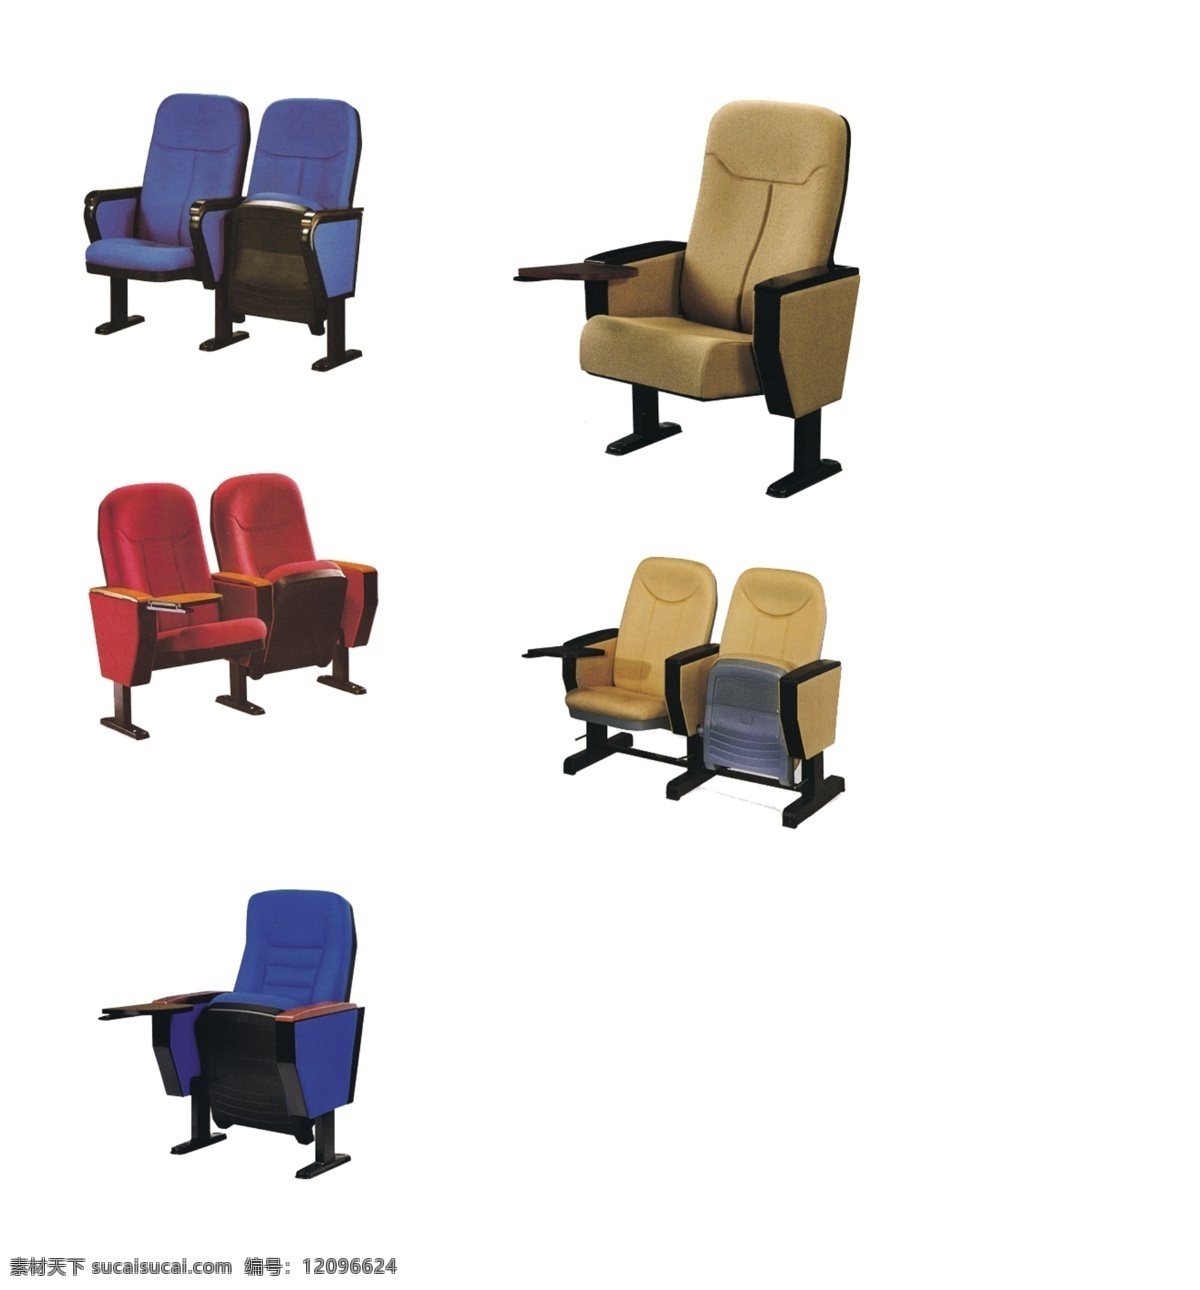 礼堂椅素材 礼堂椅 家具素材 椅子素材 会议礼堂椅 影院椅子 psd源文件 分层